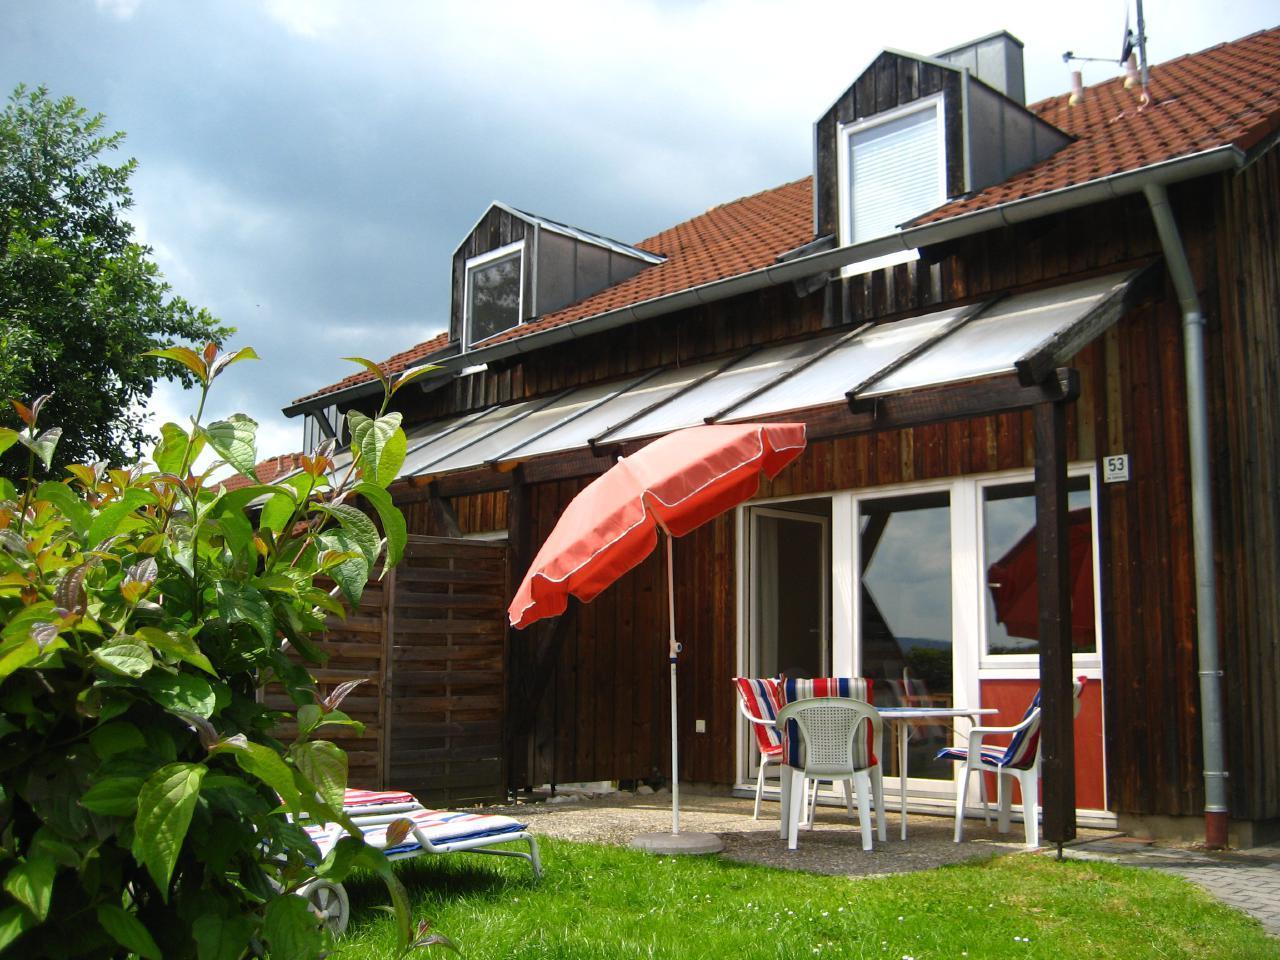 Ferienhaus in Zandt mit Grill, Garten und Terrasse   Bayern